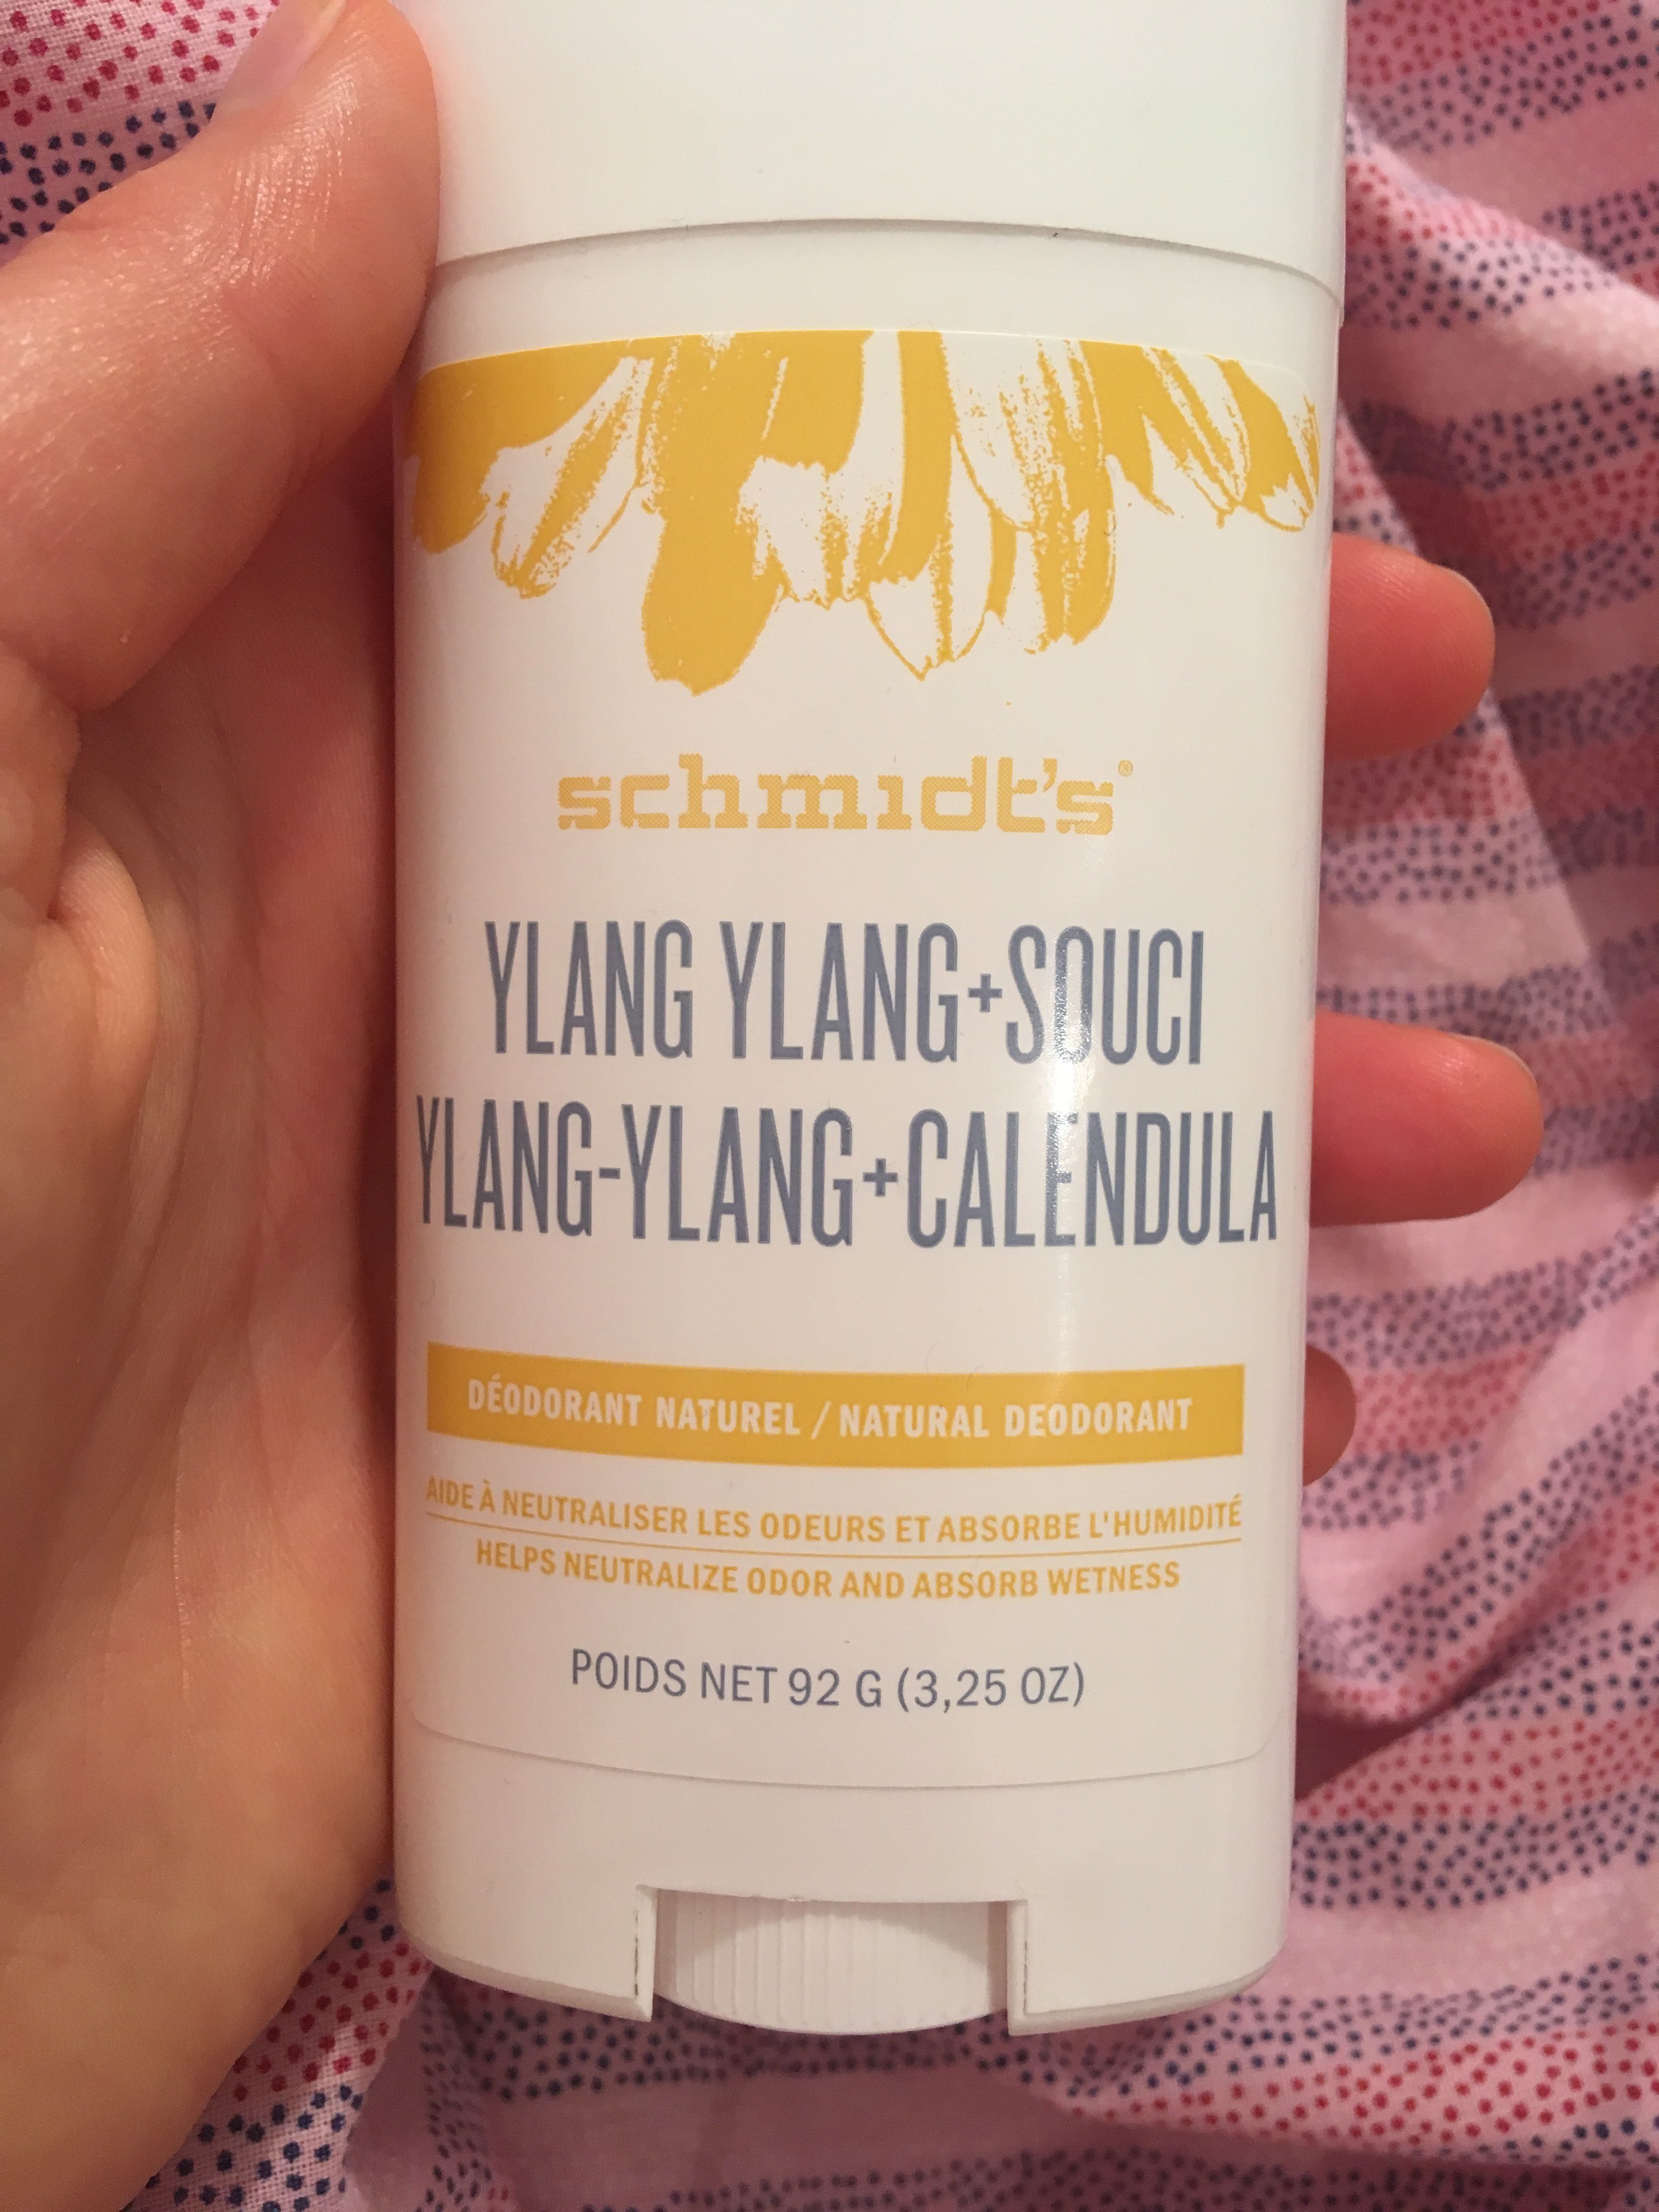 Ylang-Ylang + Calendula Deodorant naturel - Produktas - fr